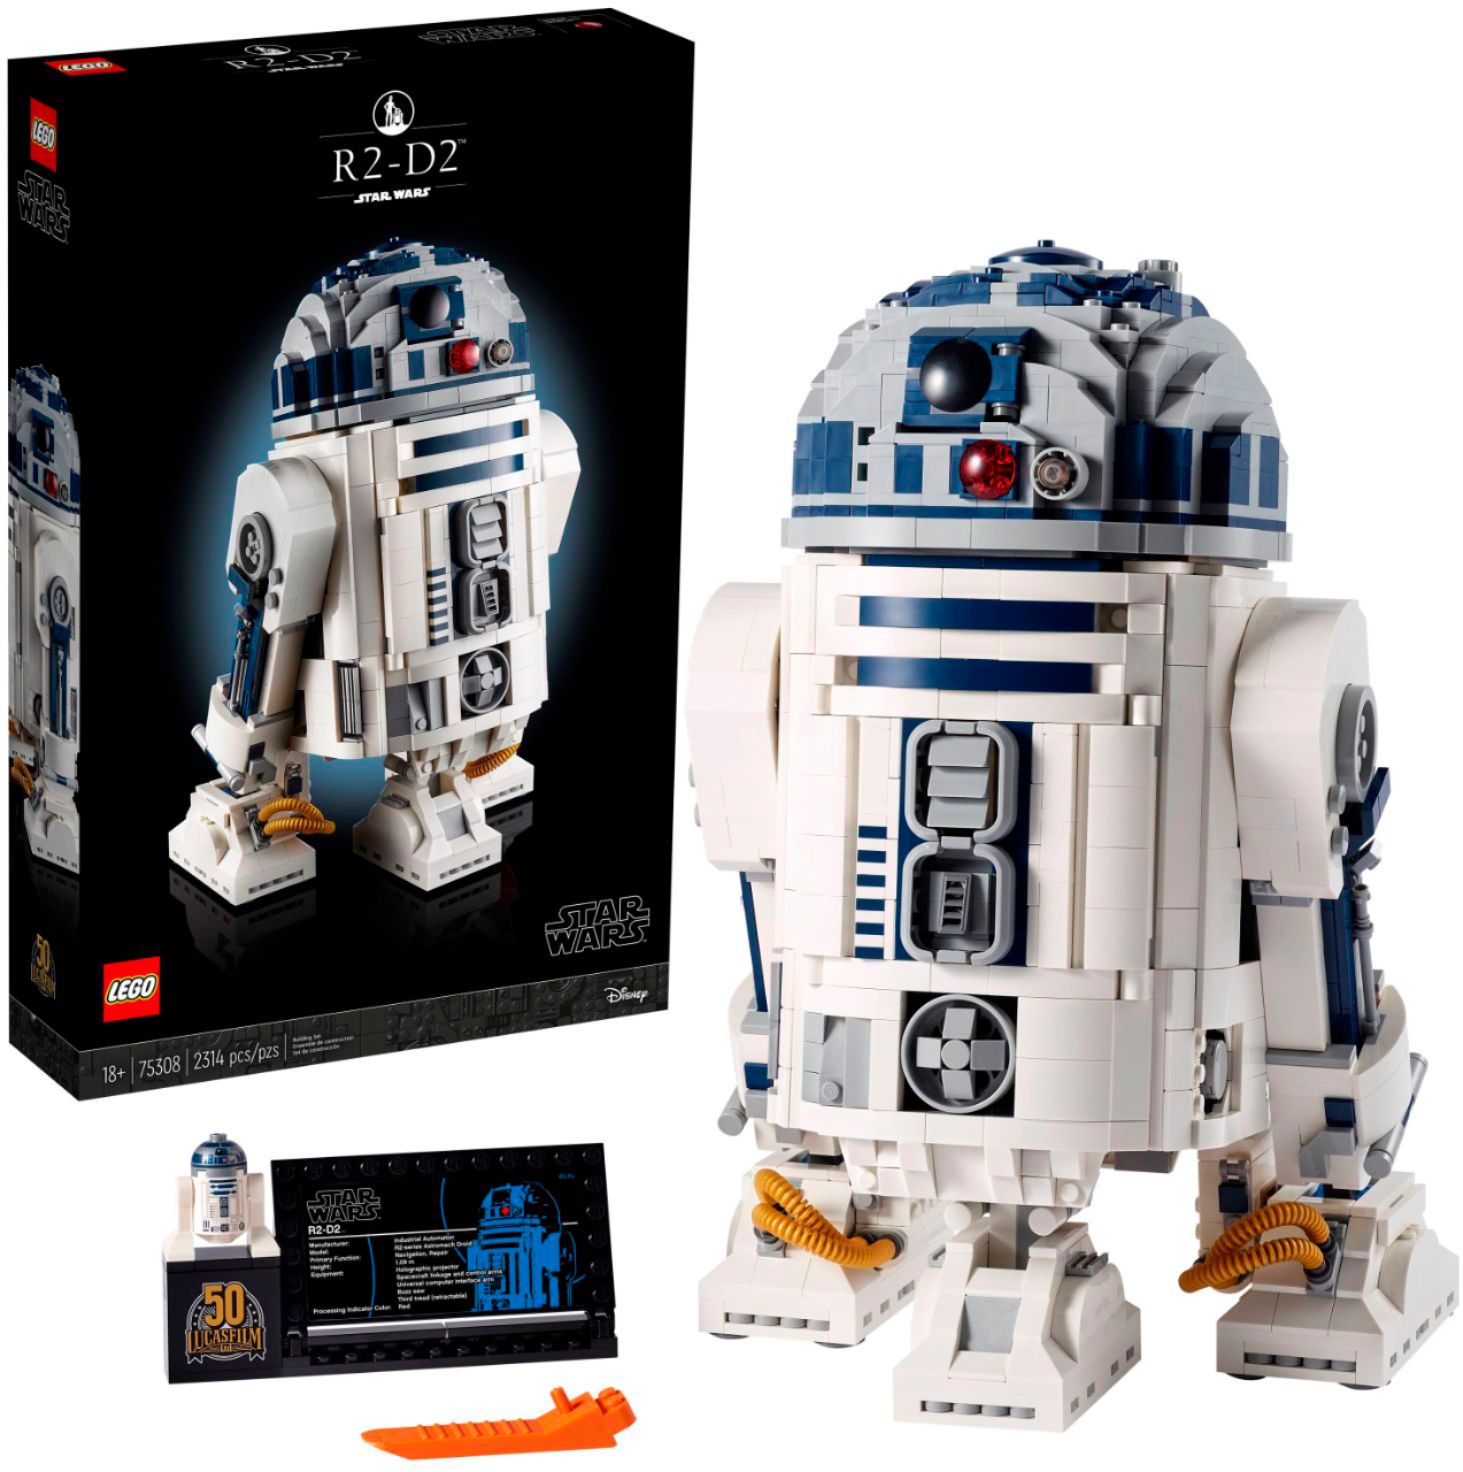 Star Wars R2-D2 75308 6332985 Best